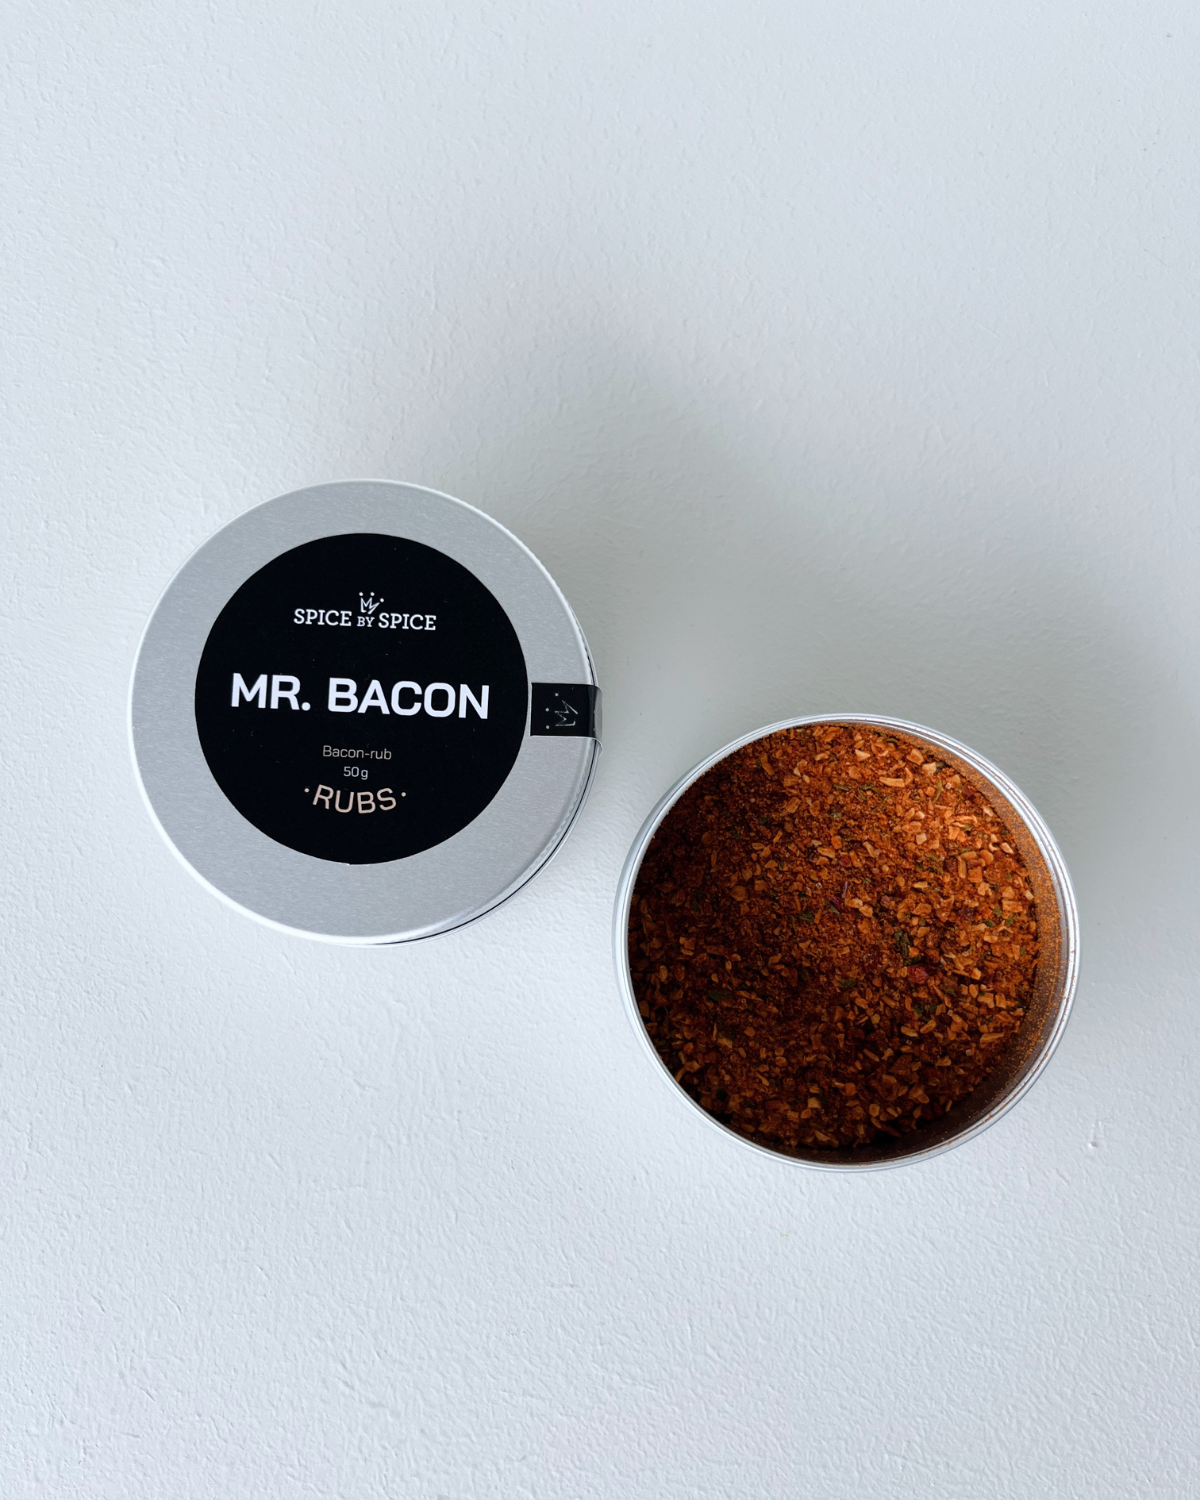 Mr. Bacon, Bacon rub